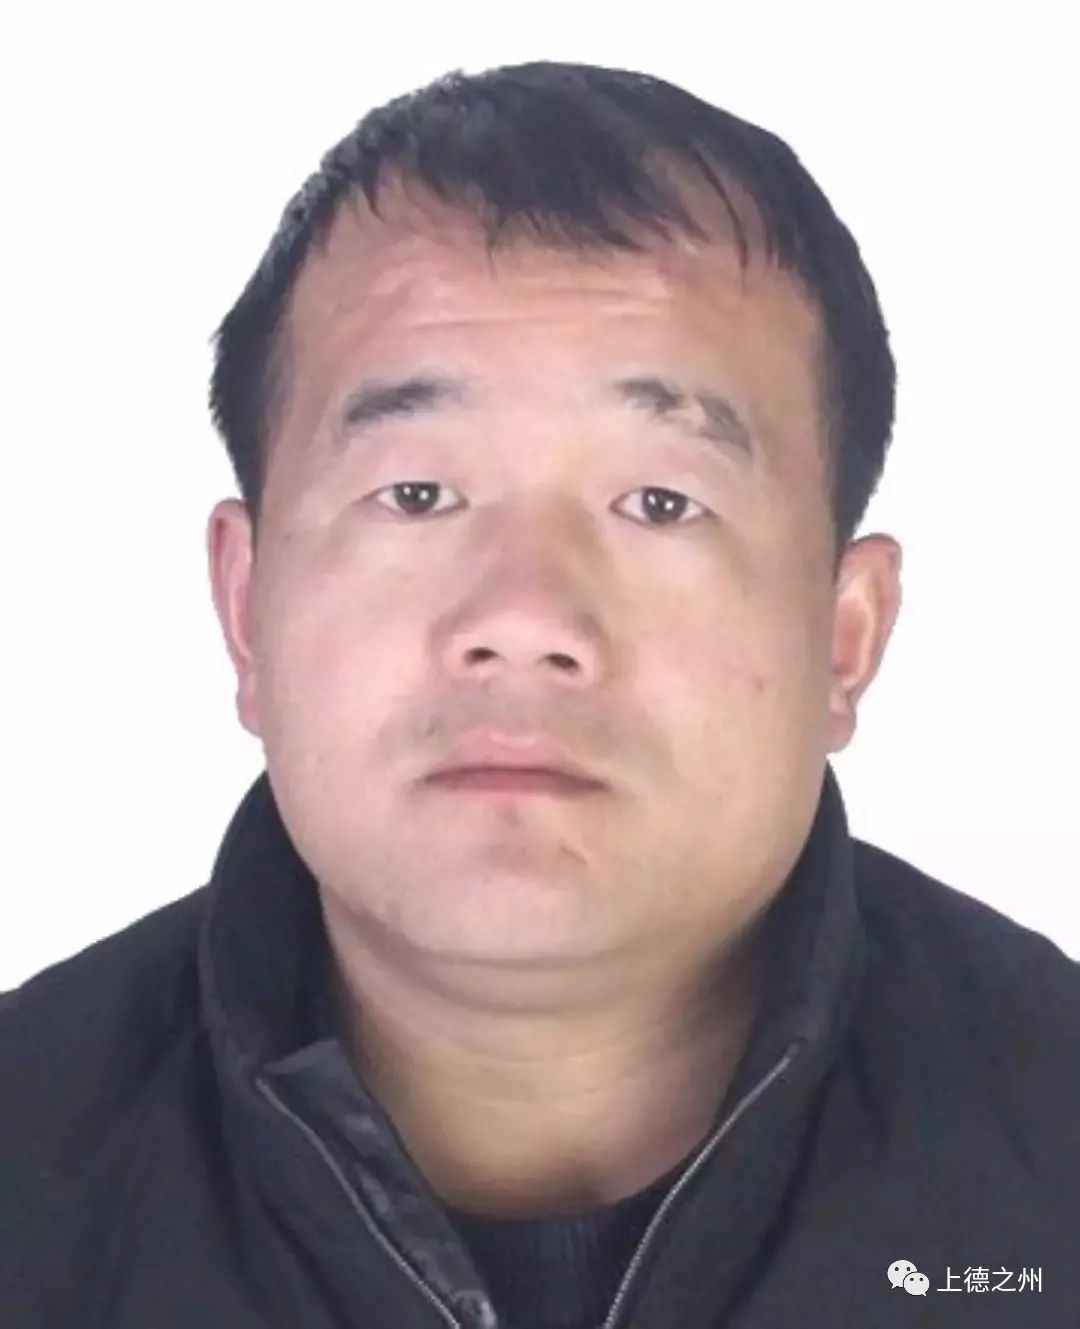 刚刚禹城涉重大刑事案件嫌疑人姜安涛被抓获